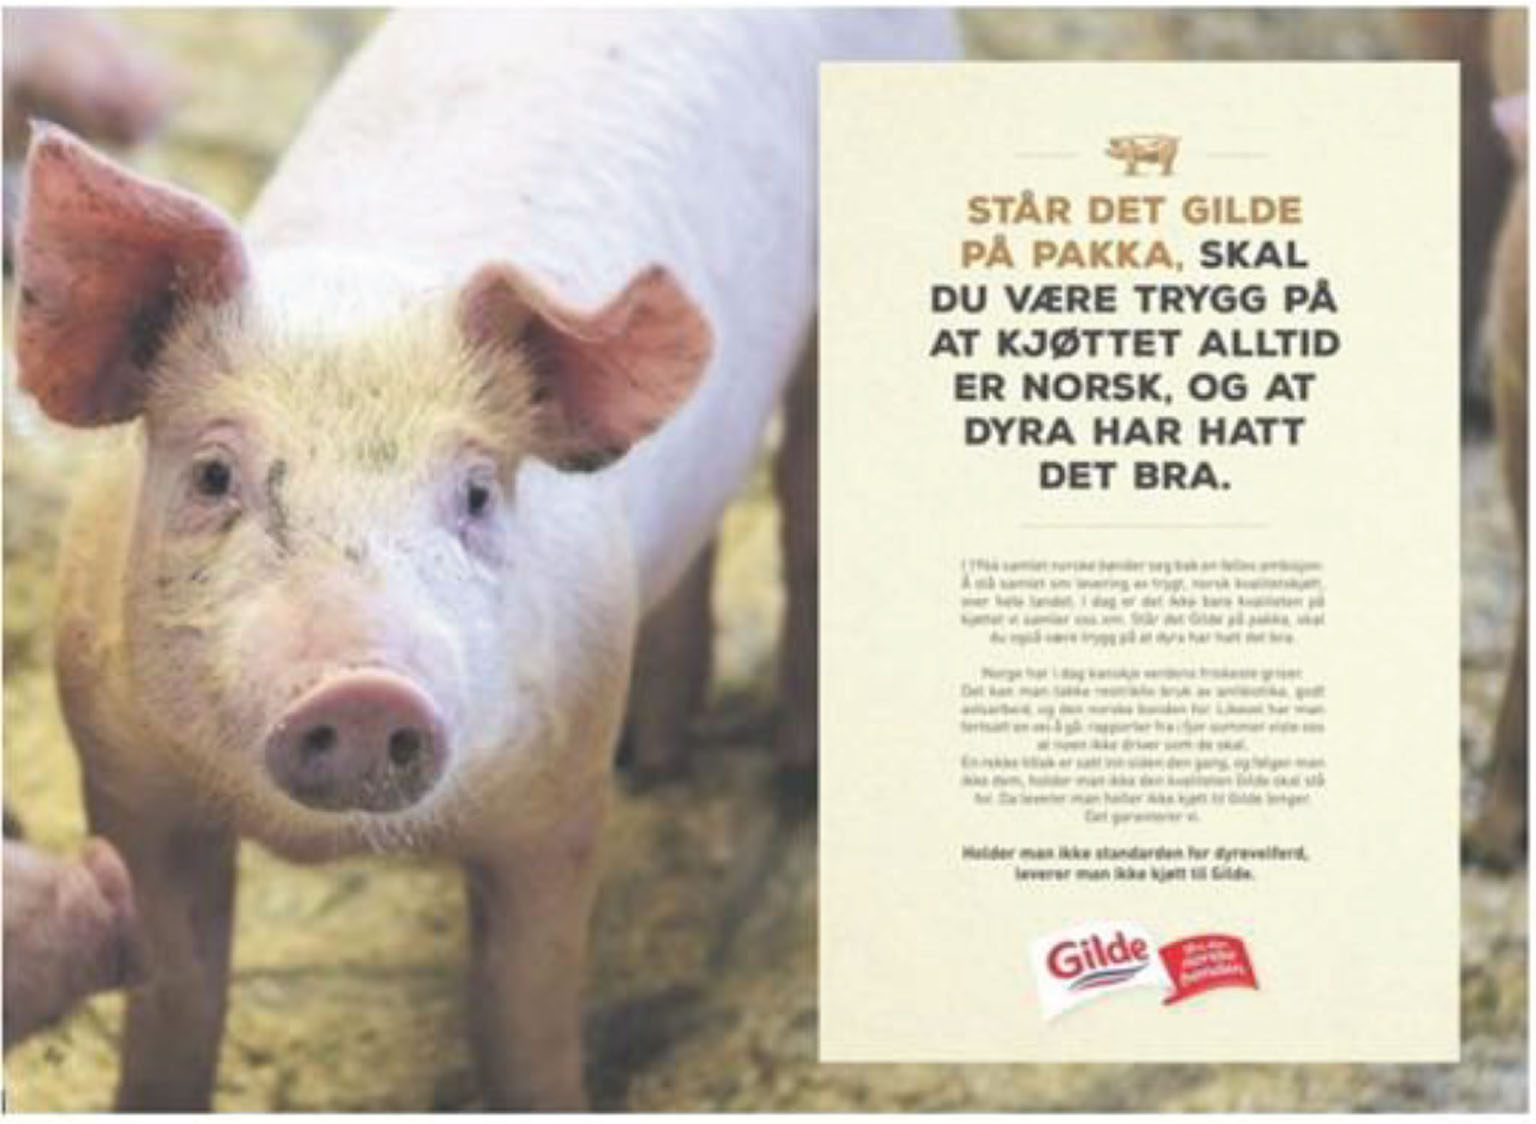 Faksimile av reklameplakat fra Gilde med bilde av en gris. I teksten står det følgende tekst: Står det Gilde på pakka, skal du være trygg på at kjøttet alltid er norsk, og at dyra har hatt det bra.